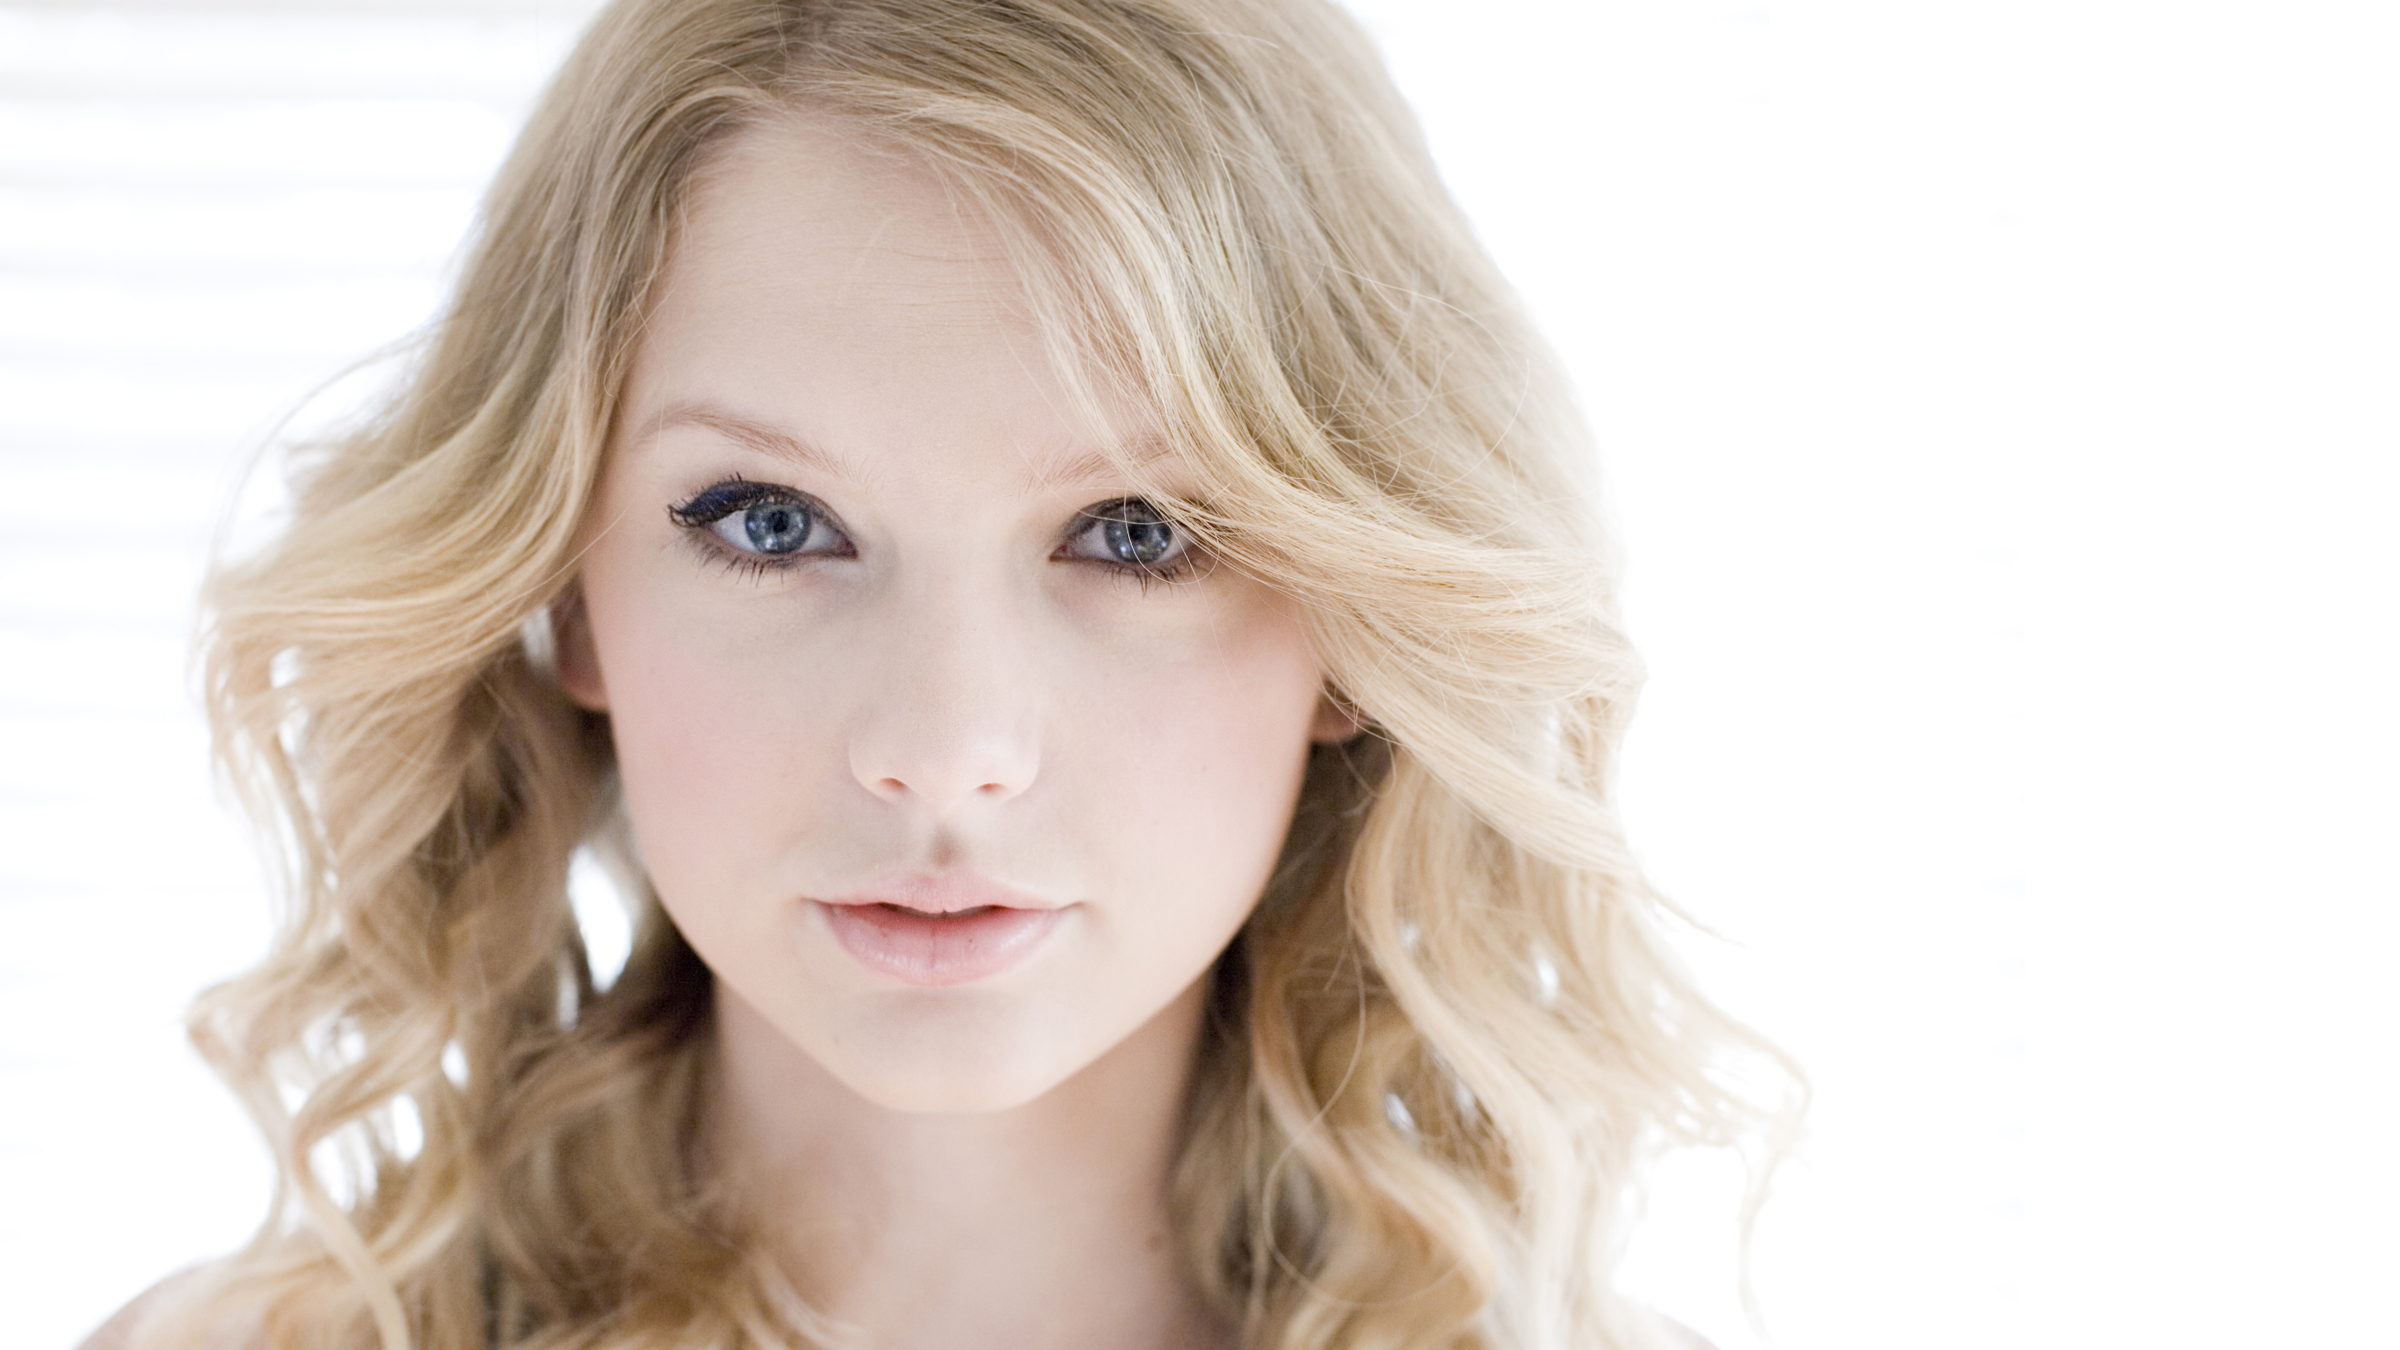 People 2400x1350 Taylor Swift blonde blue eyes singer women